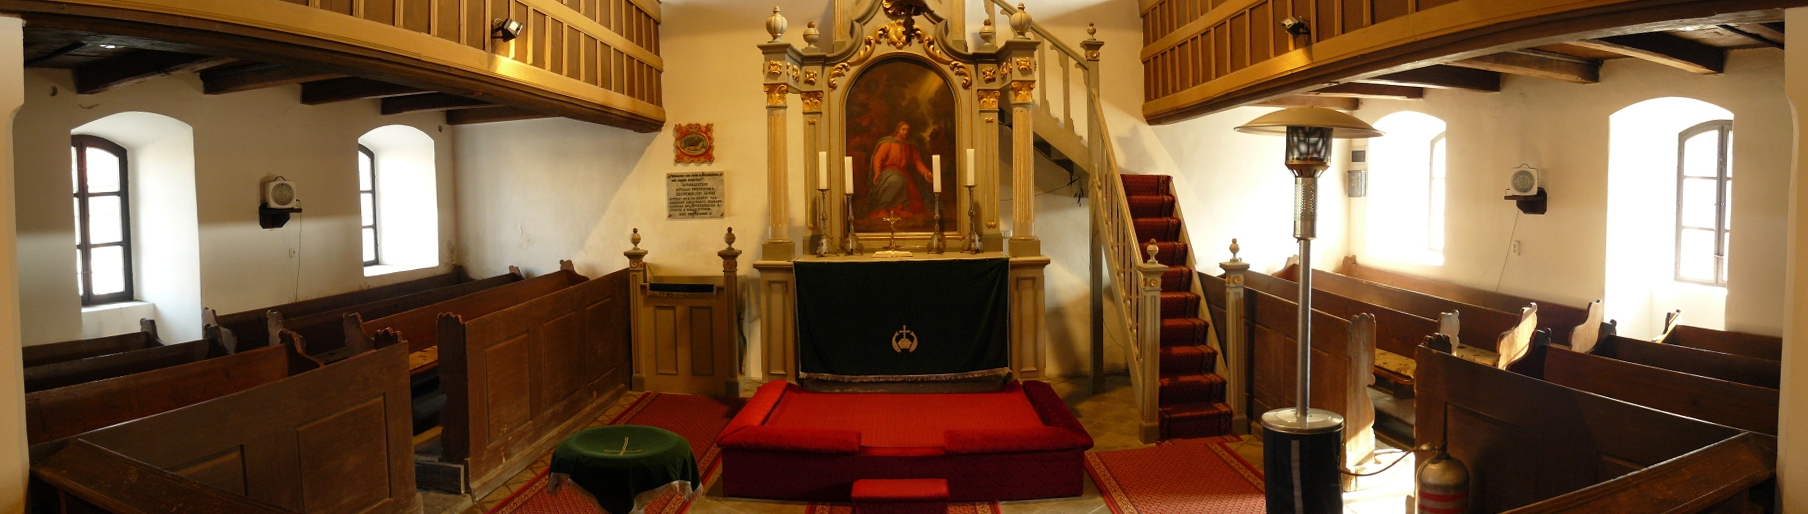 Panorámakép a kajárpéci evangélikus templom oltárteréről